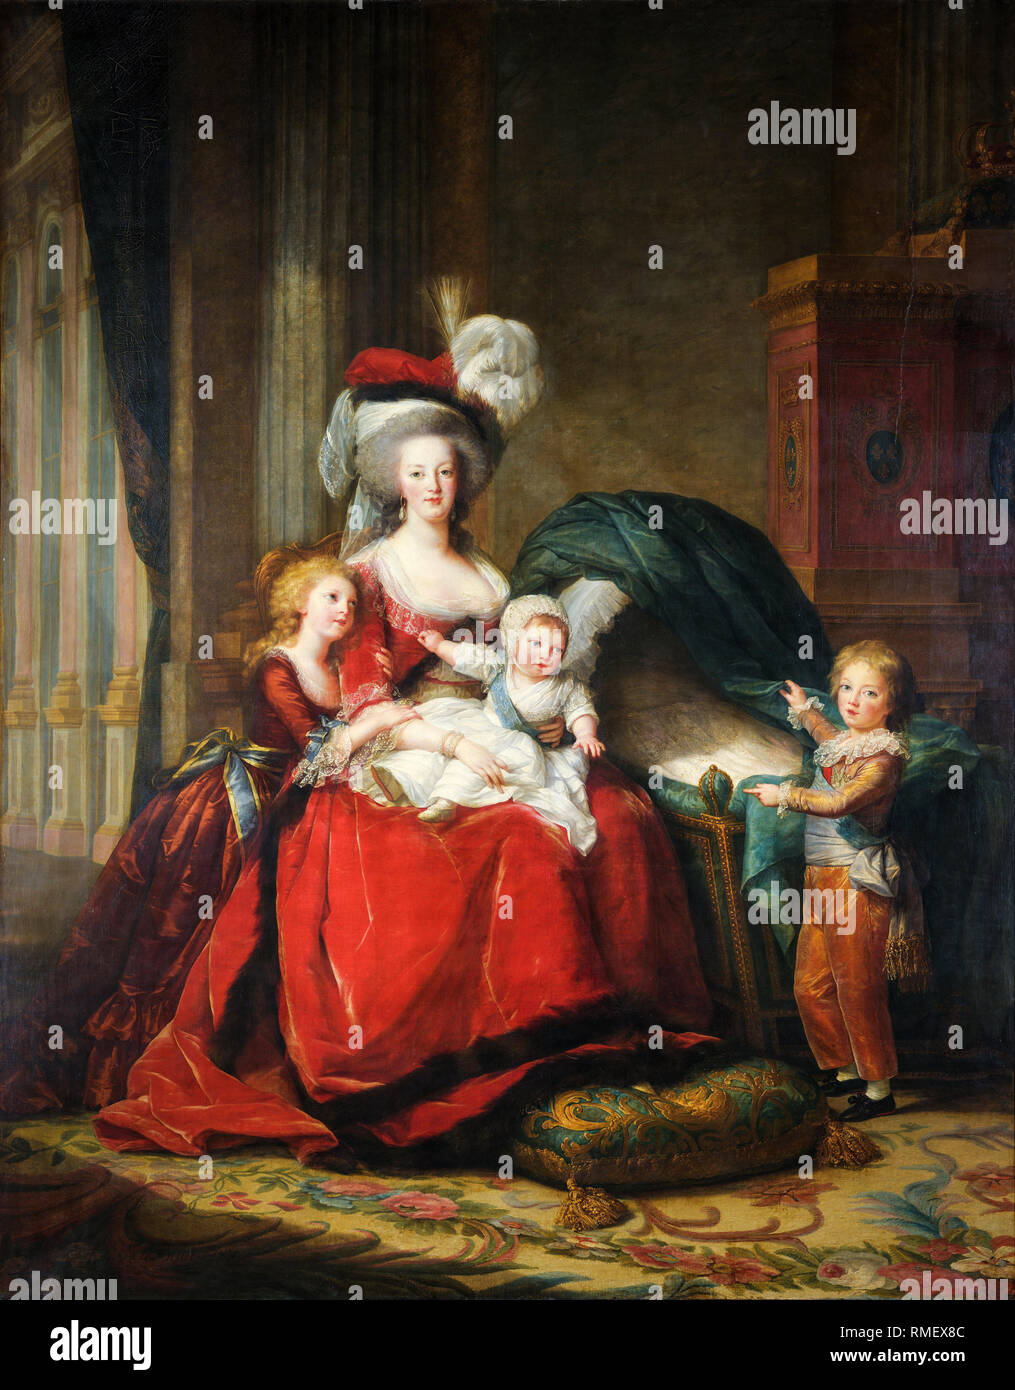 Marie-Antoinette (1755-1793), Reine de France, et ses enfants, portrait peint par Elisabeth Vigee le Brun, 1787 Banque D'Images